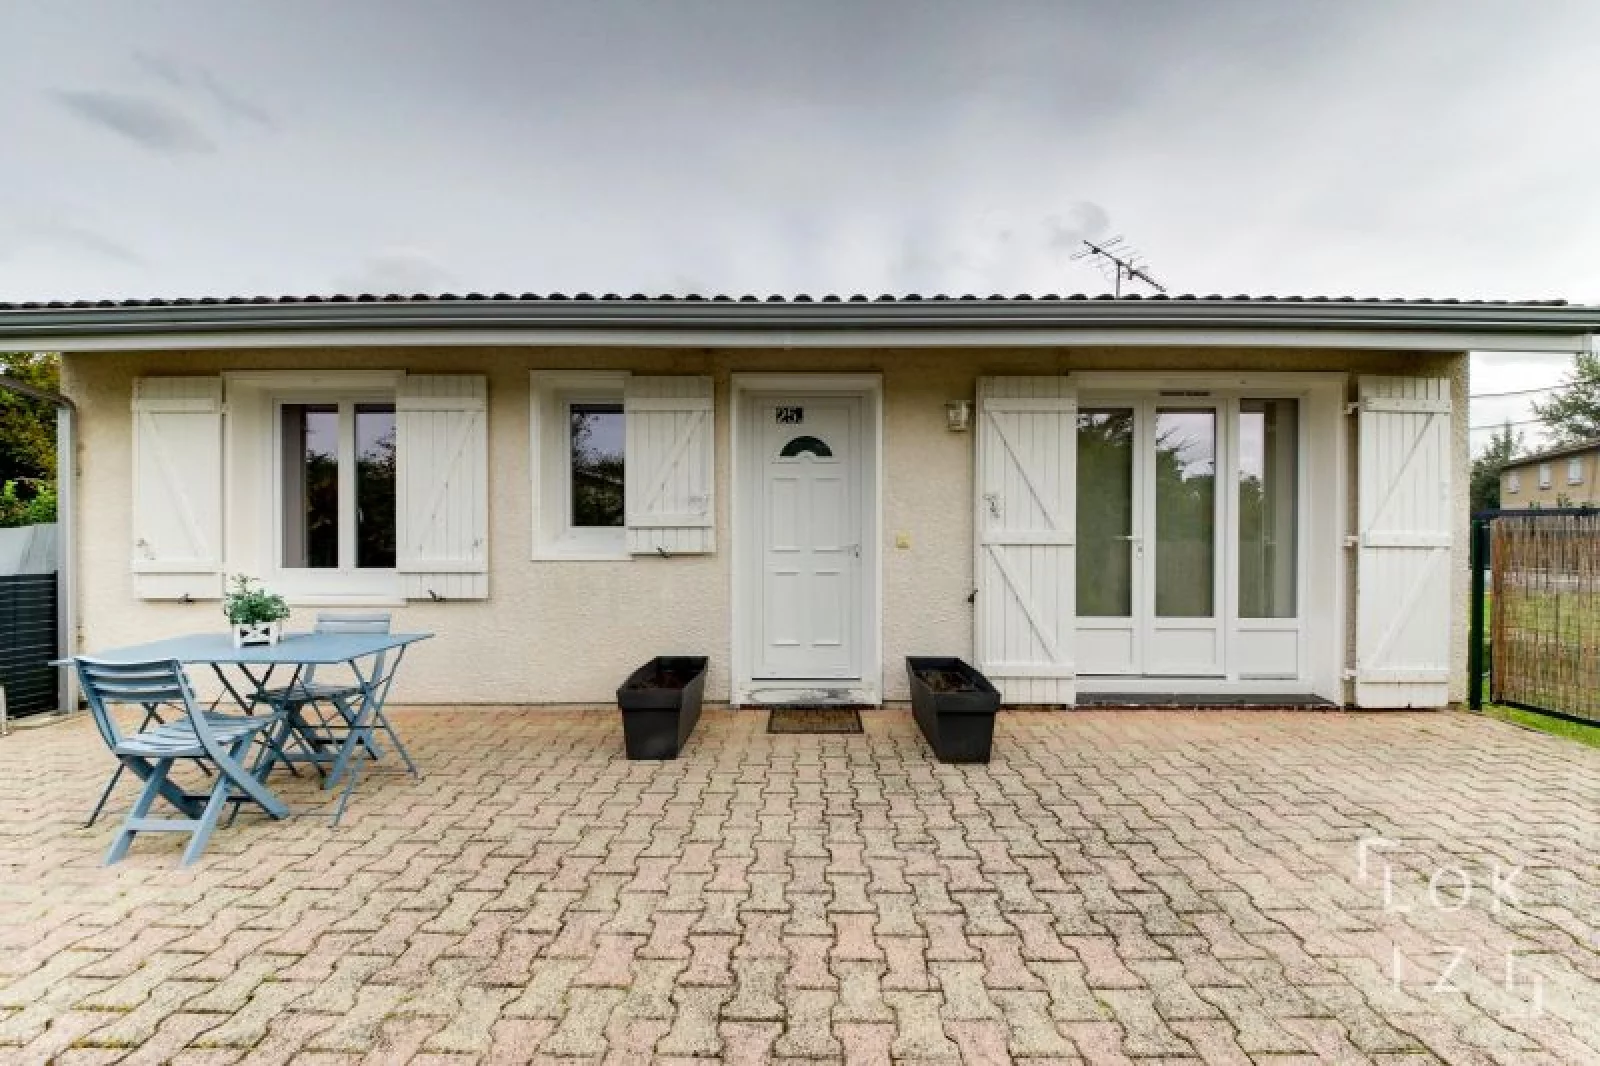 Location maison meublée 74m² avec jardin (Bordeaux - Ambarès et Lagrave)